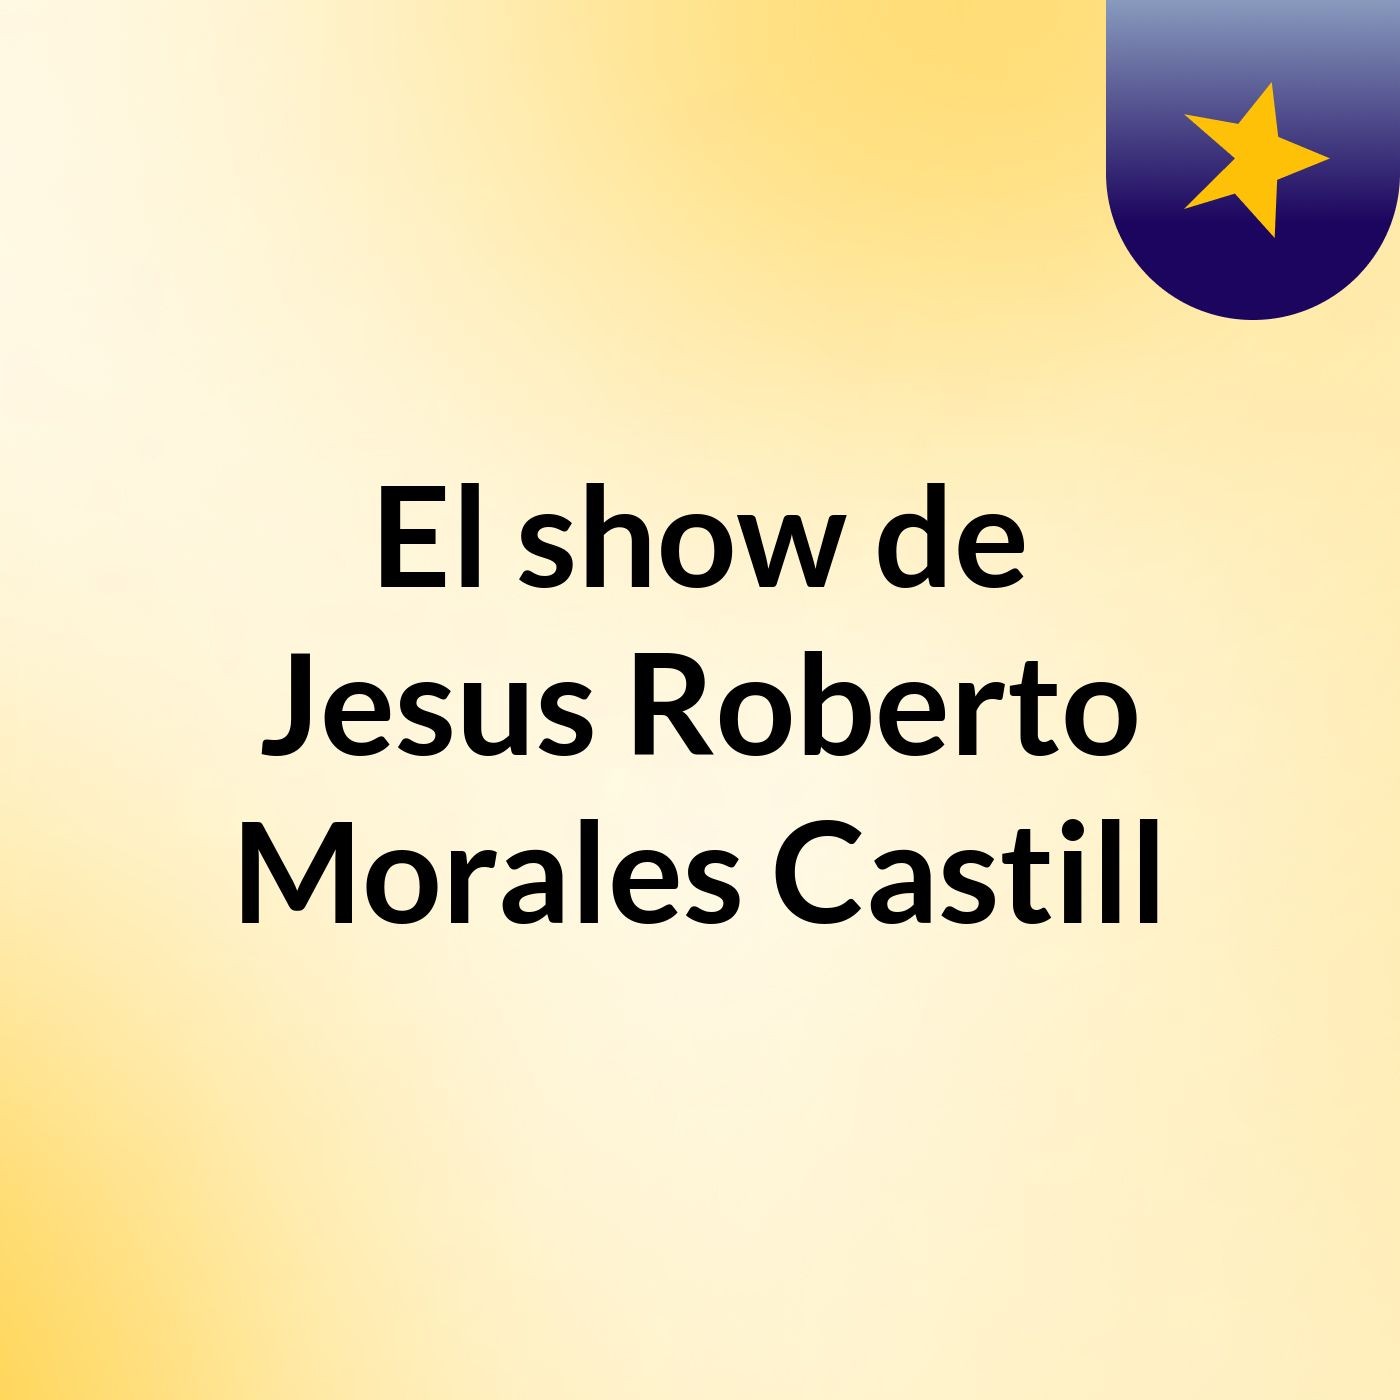 El show de Jesus Roberto Morales Castill